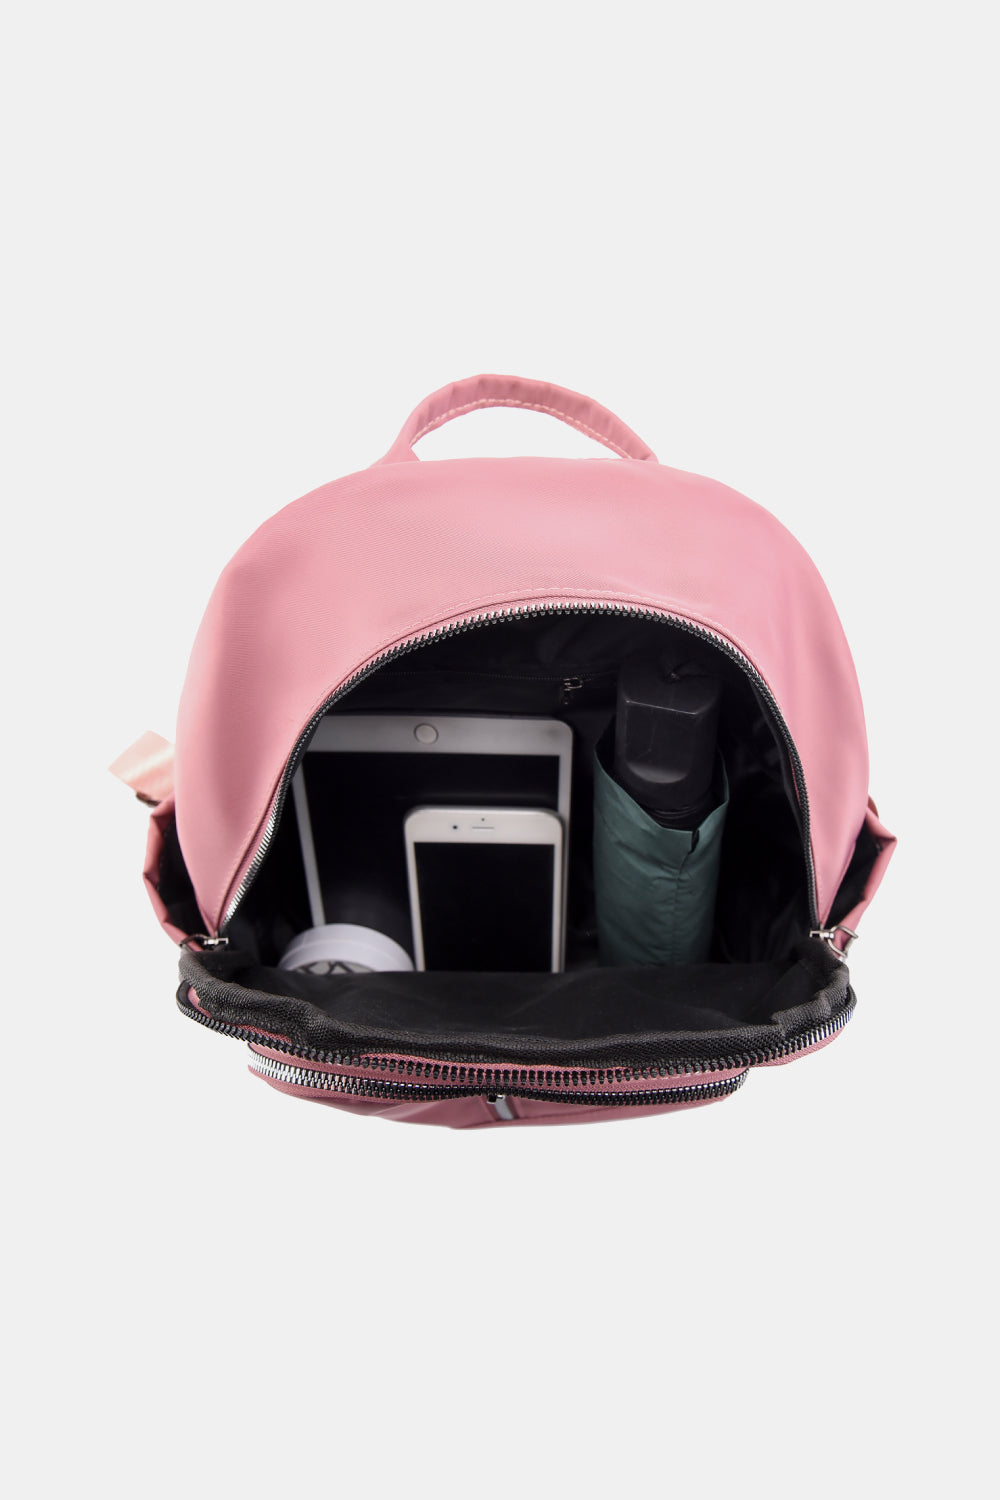 Hannah Mae Medium Nylon Backpack